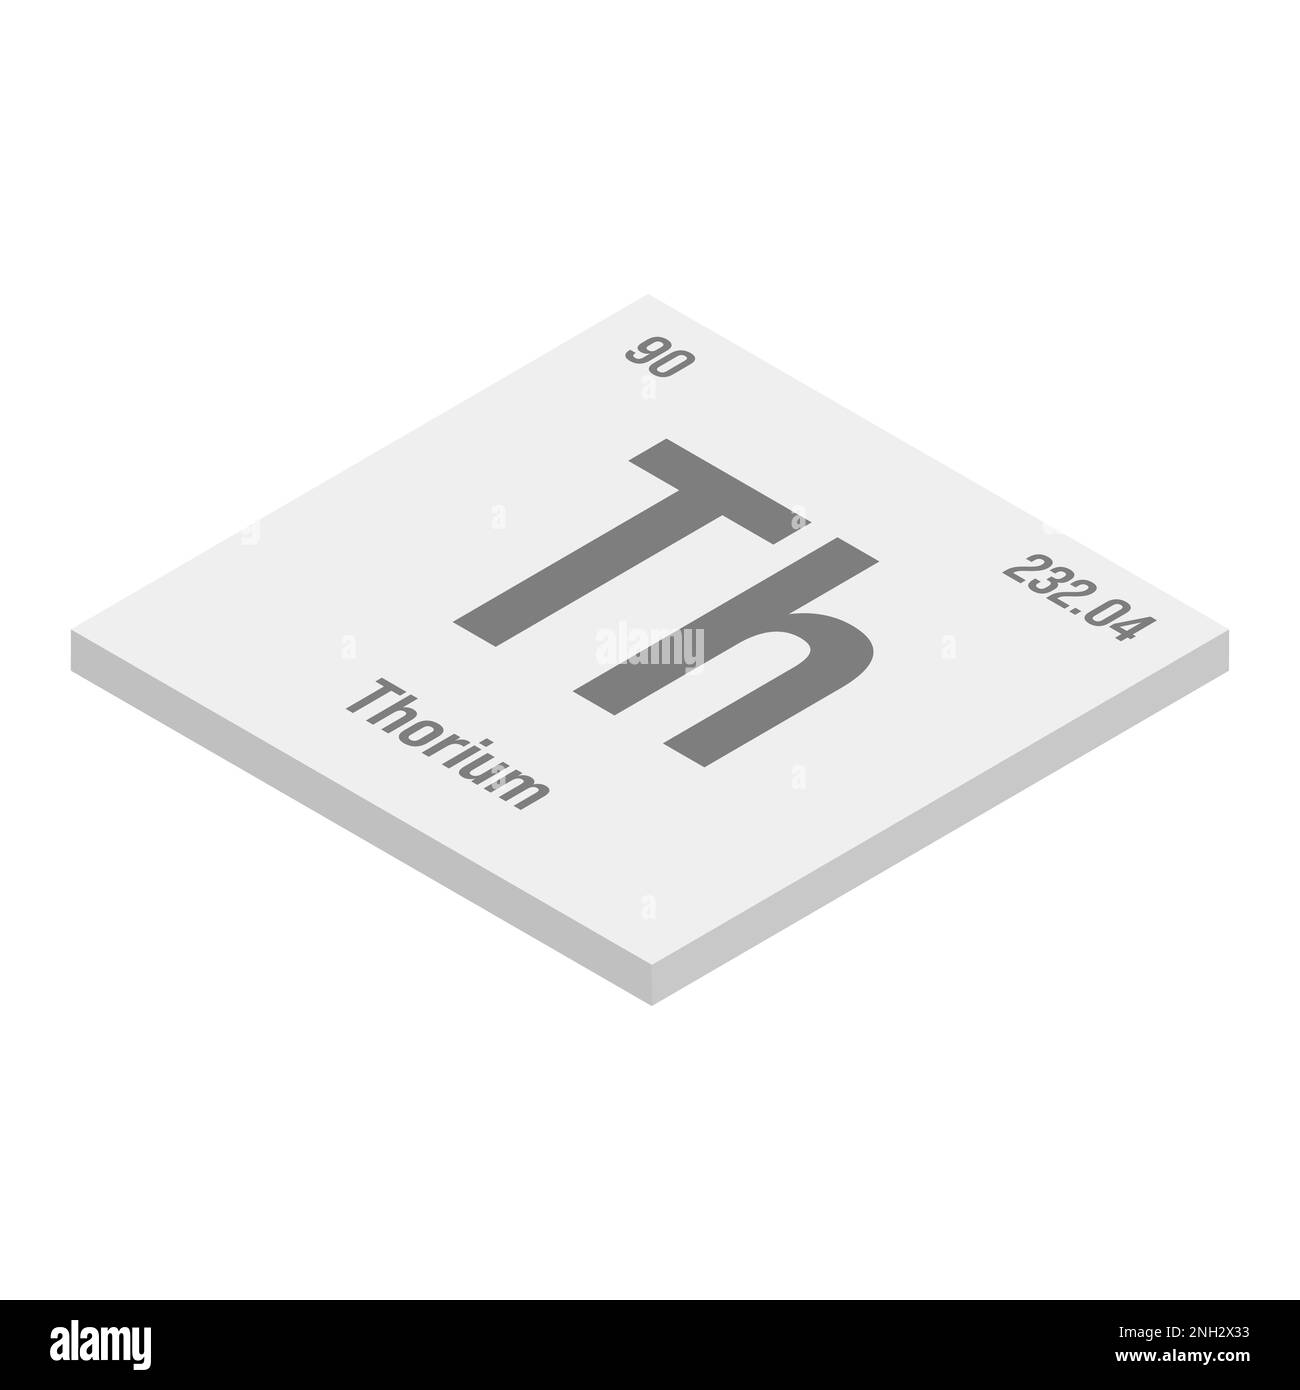 Thorium, TH, gris 3D illustration isométrique de l'élément de table périodique avec nom, symbole, numéro atomique et poids. Actinide avec des utilisations potentielles dans l'énergie nucléaire et la recherche scientifique. Illustration de Vecteur